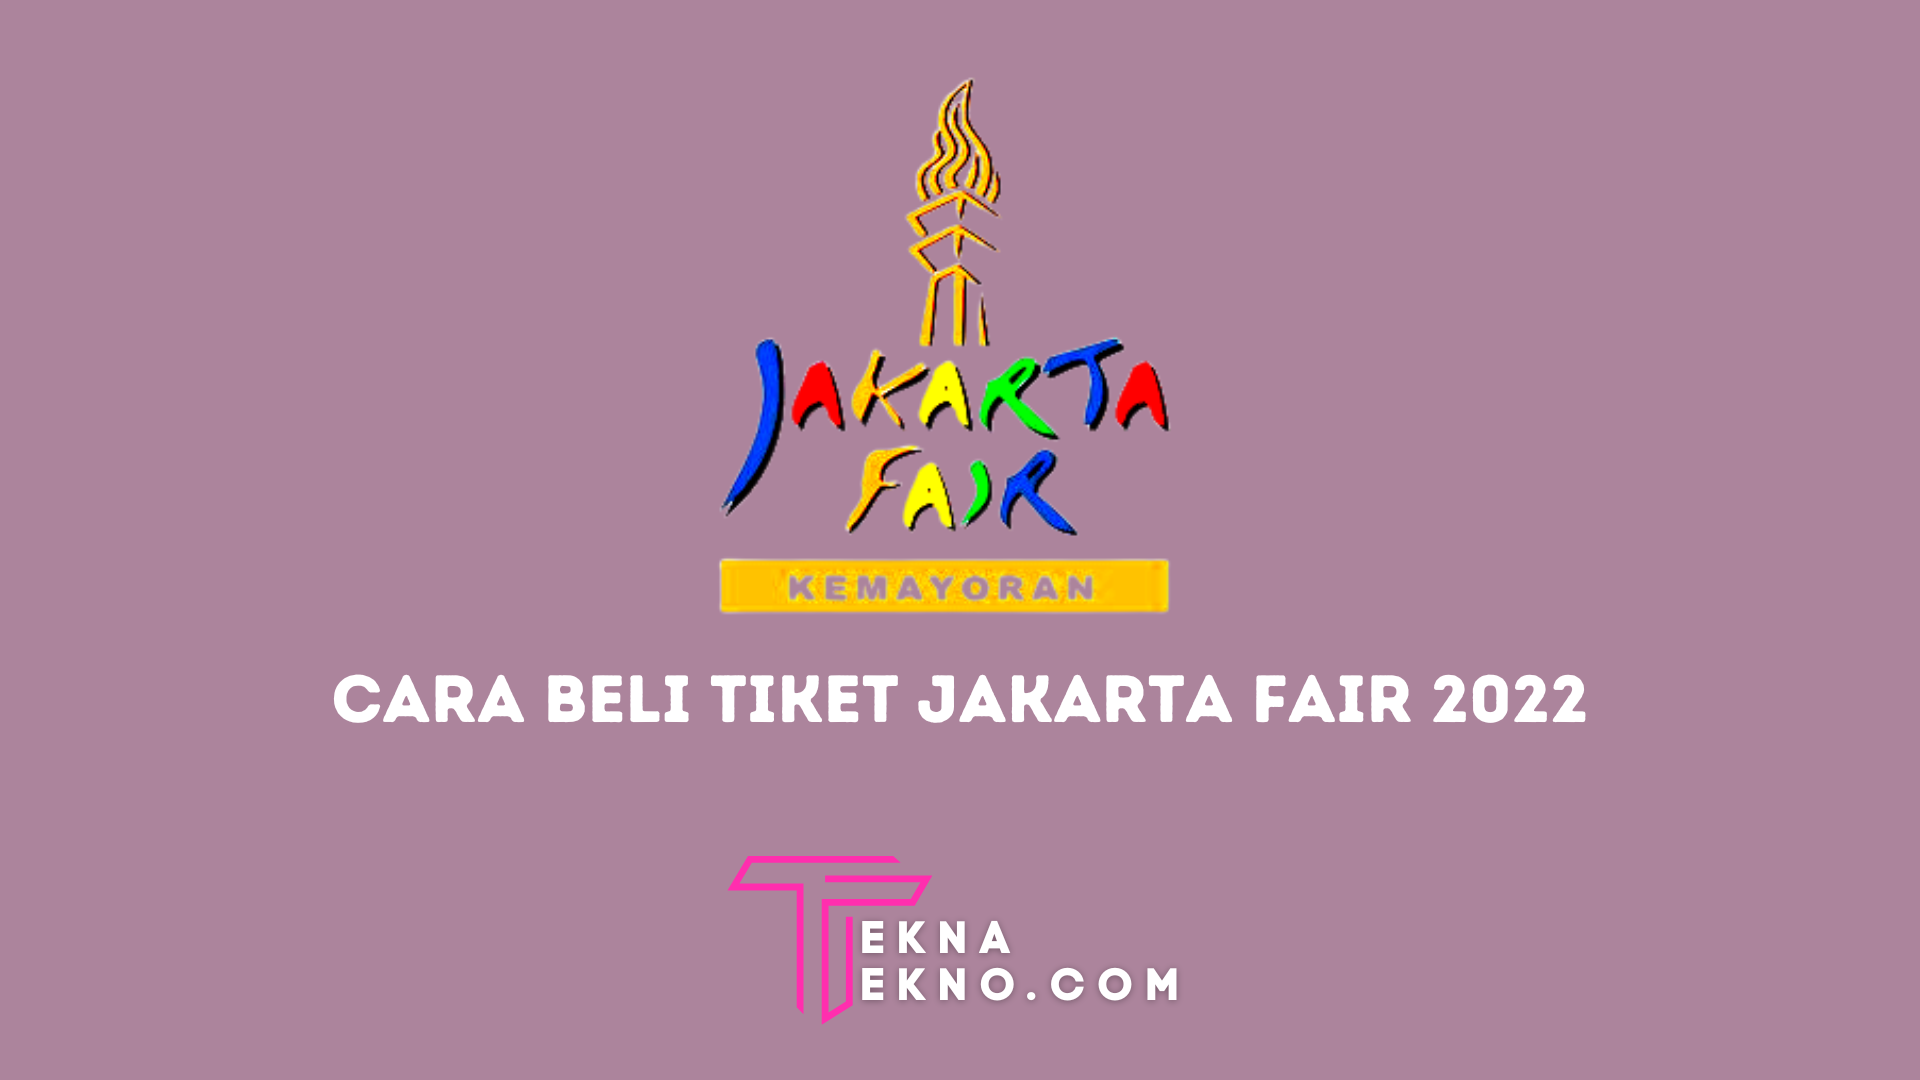 Tiket Jakarta Fair 2022 Dijual Online, Begini Cara Belinya